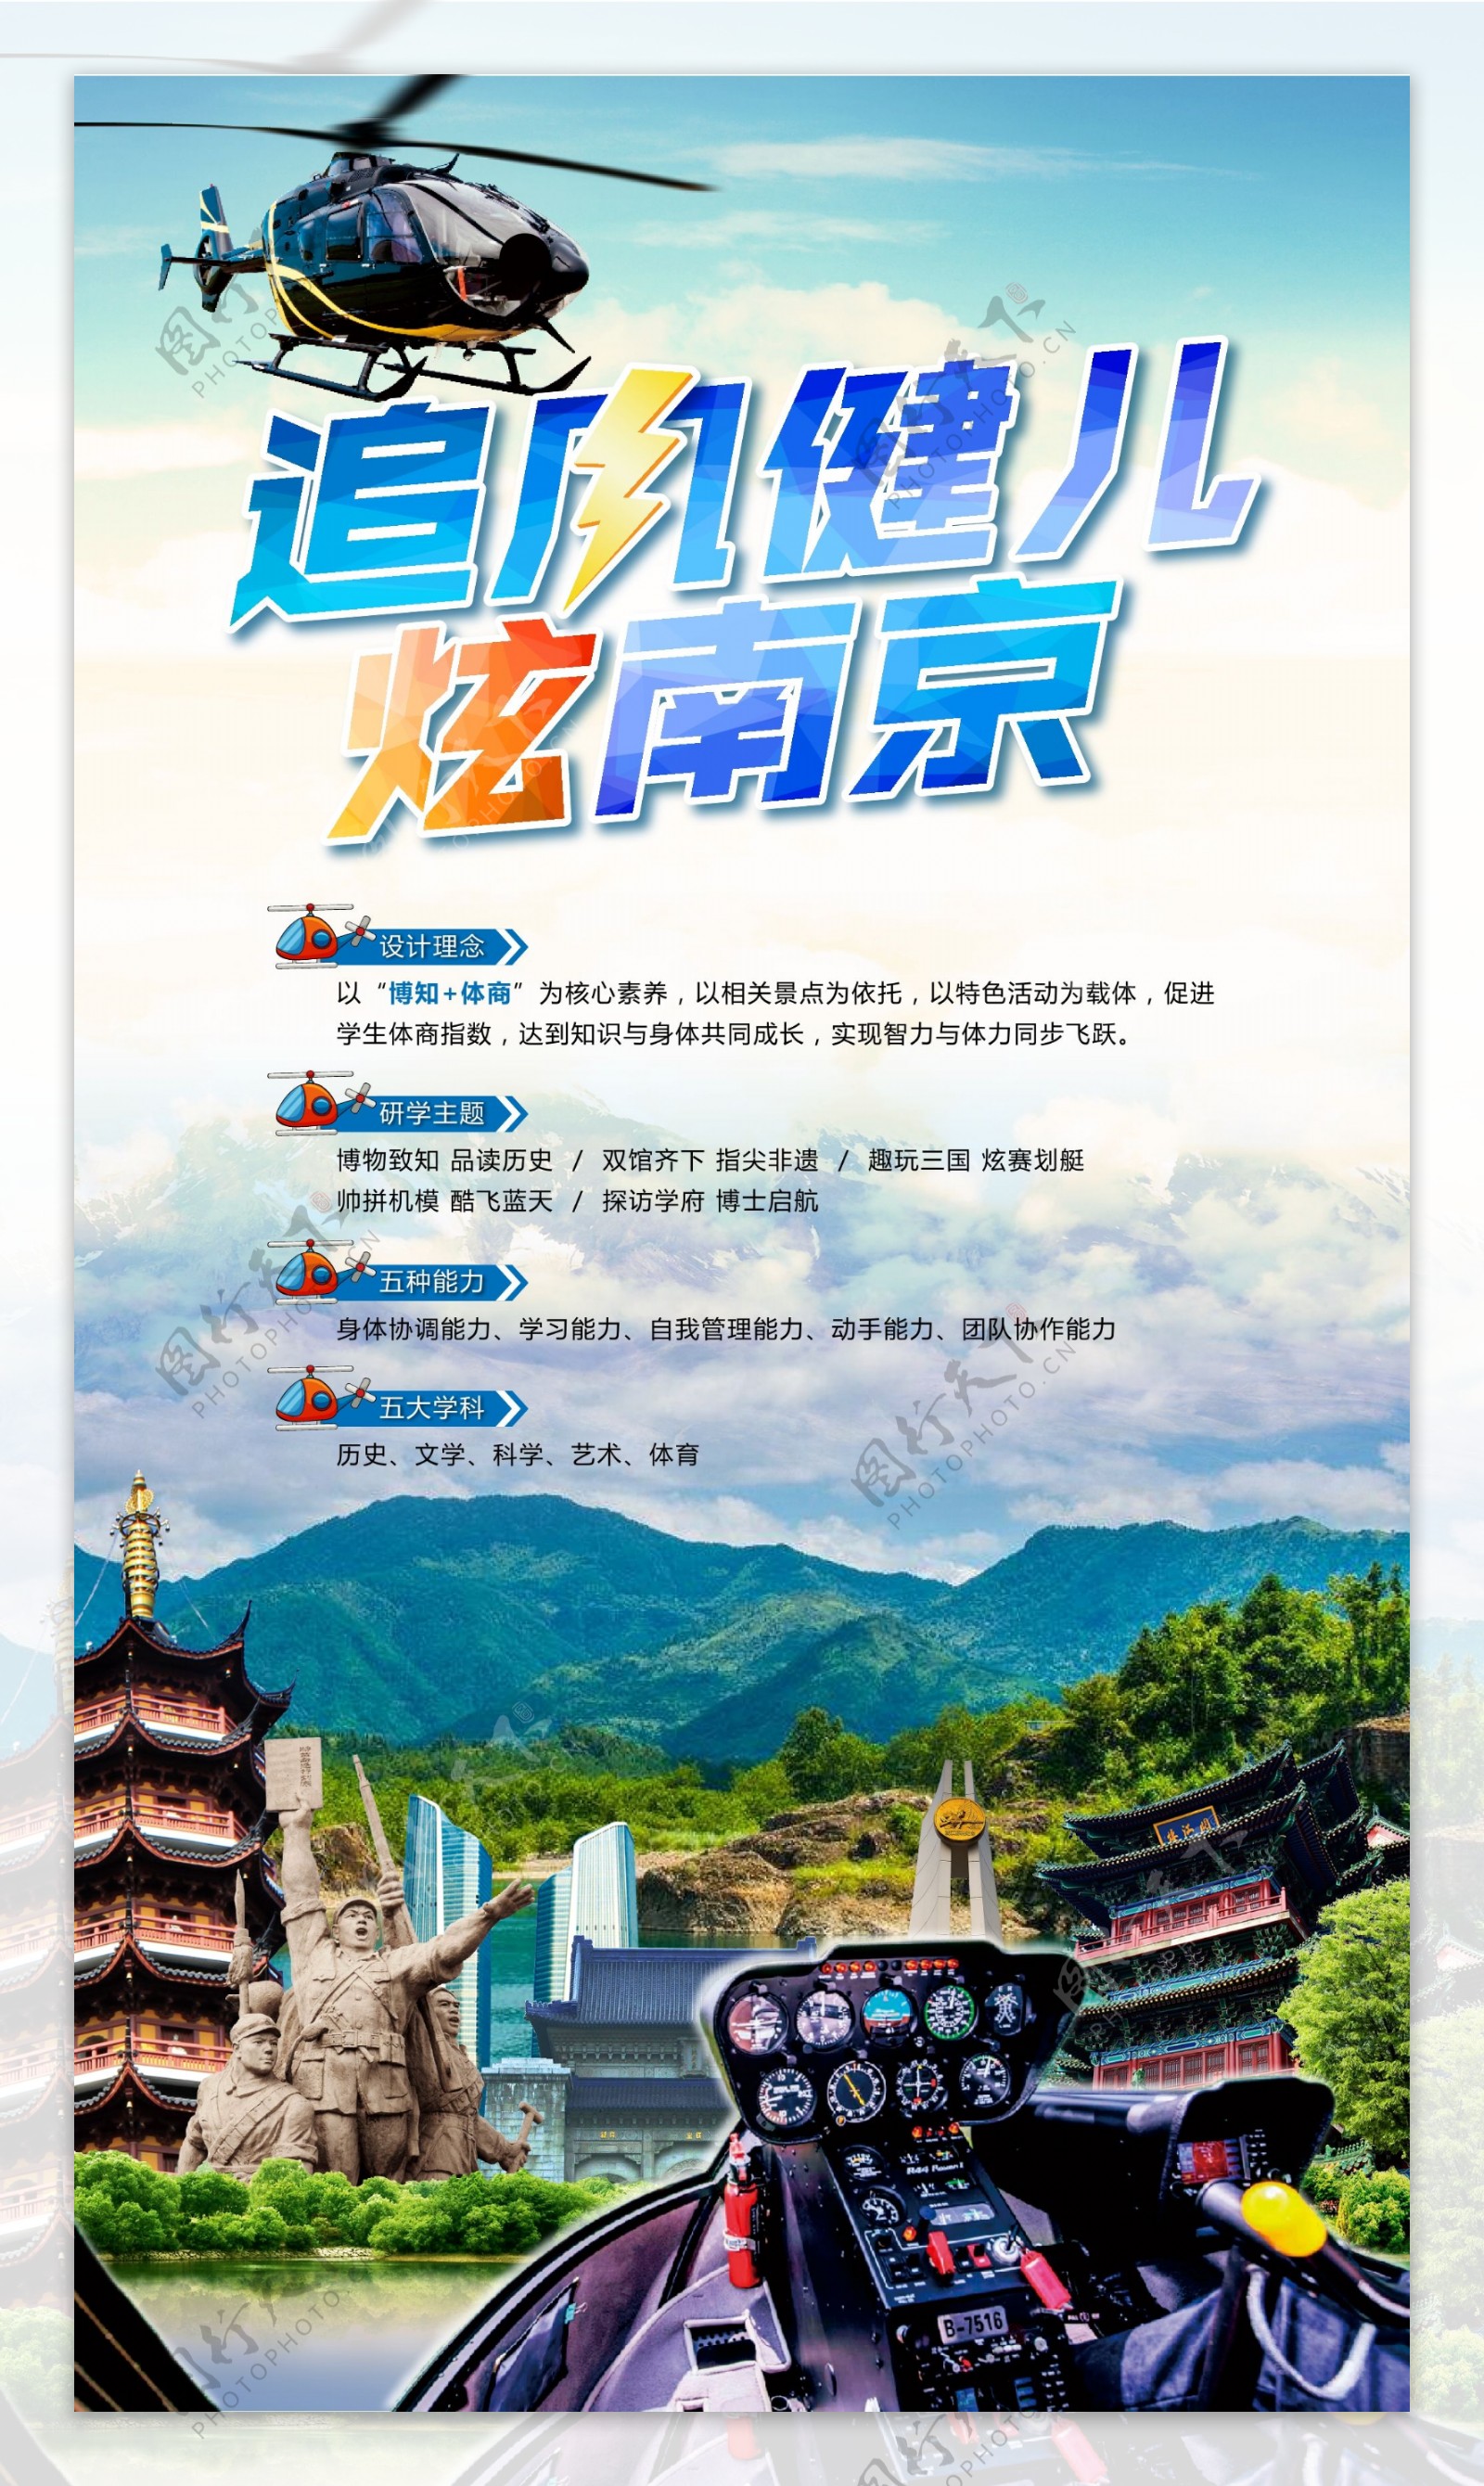 追风健儿炫南京旅游海报